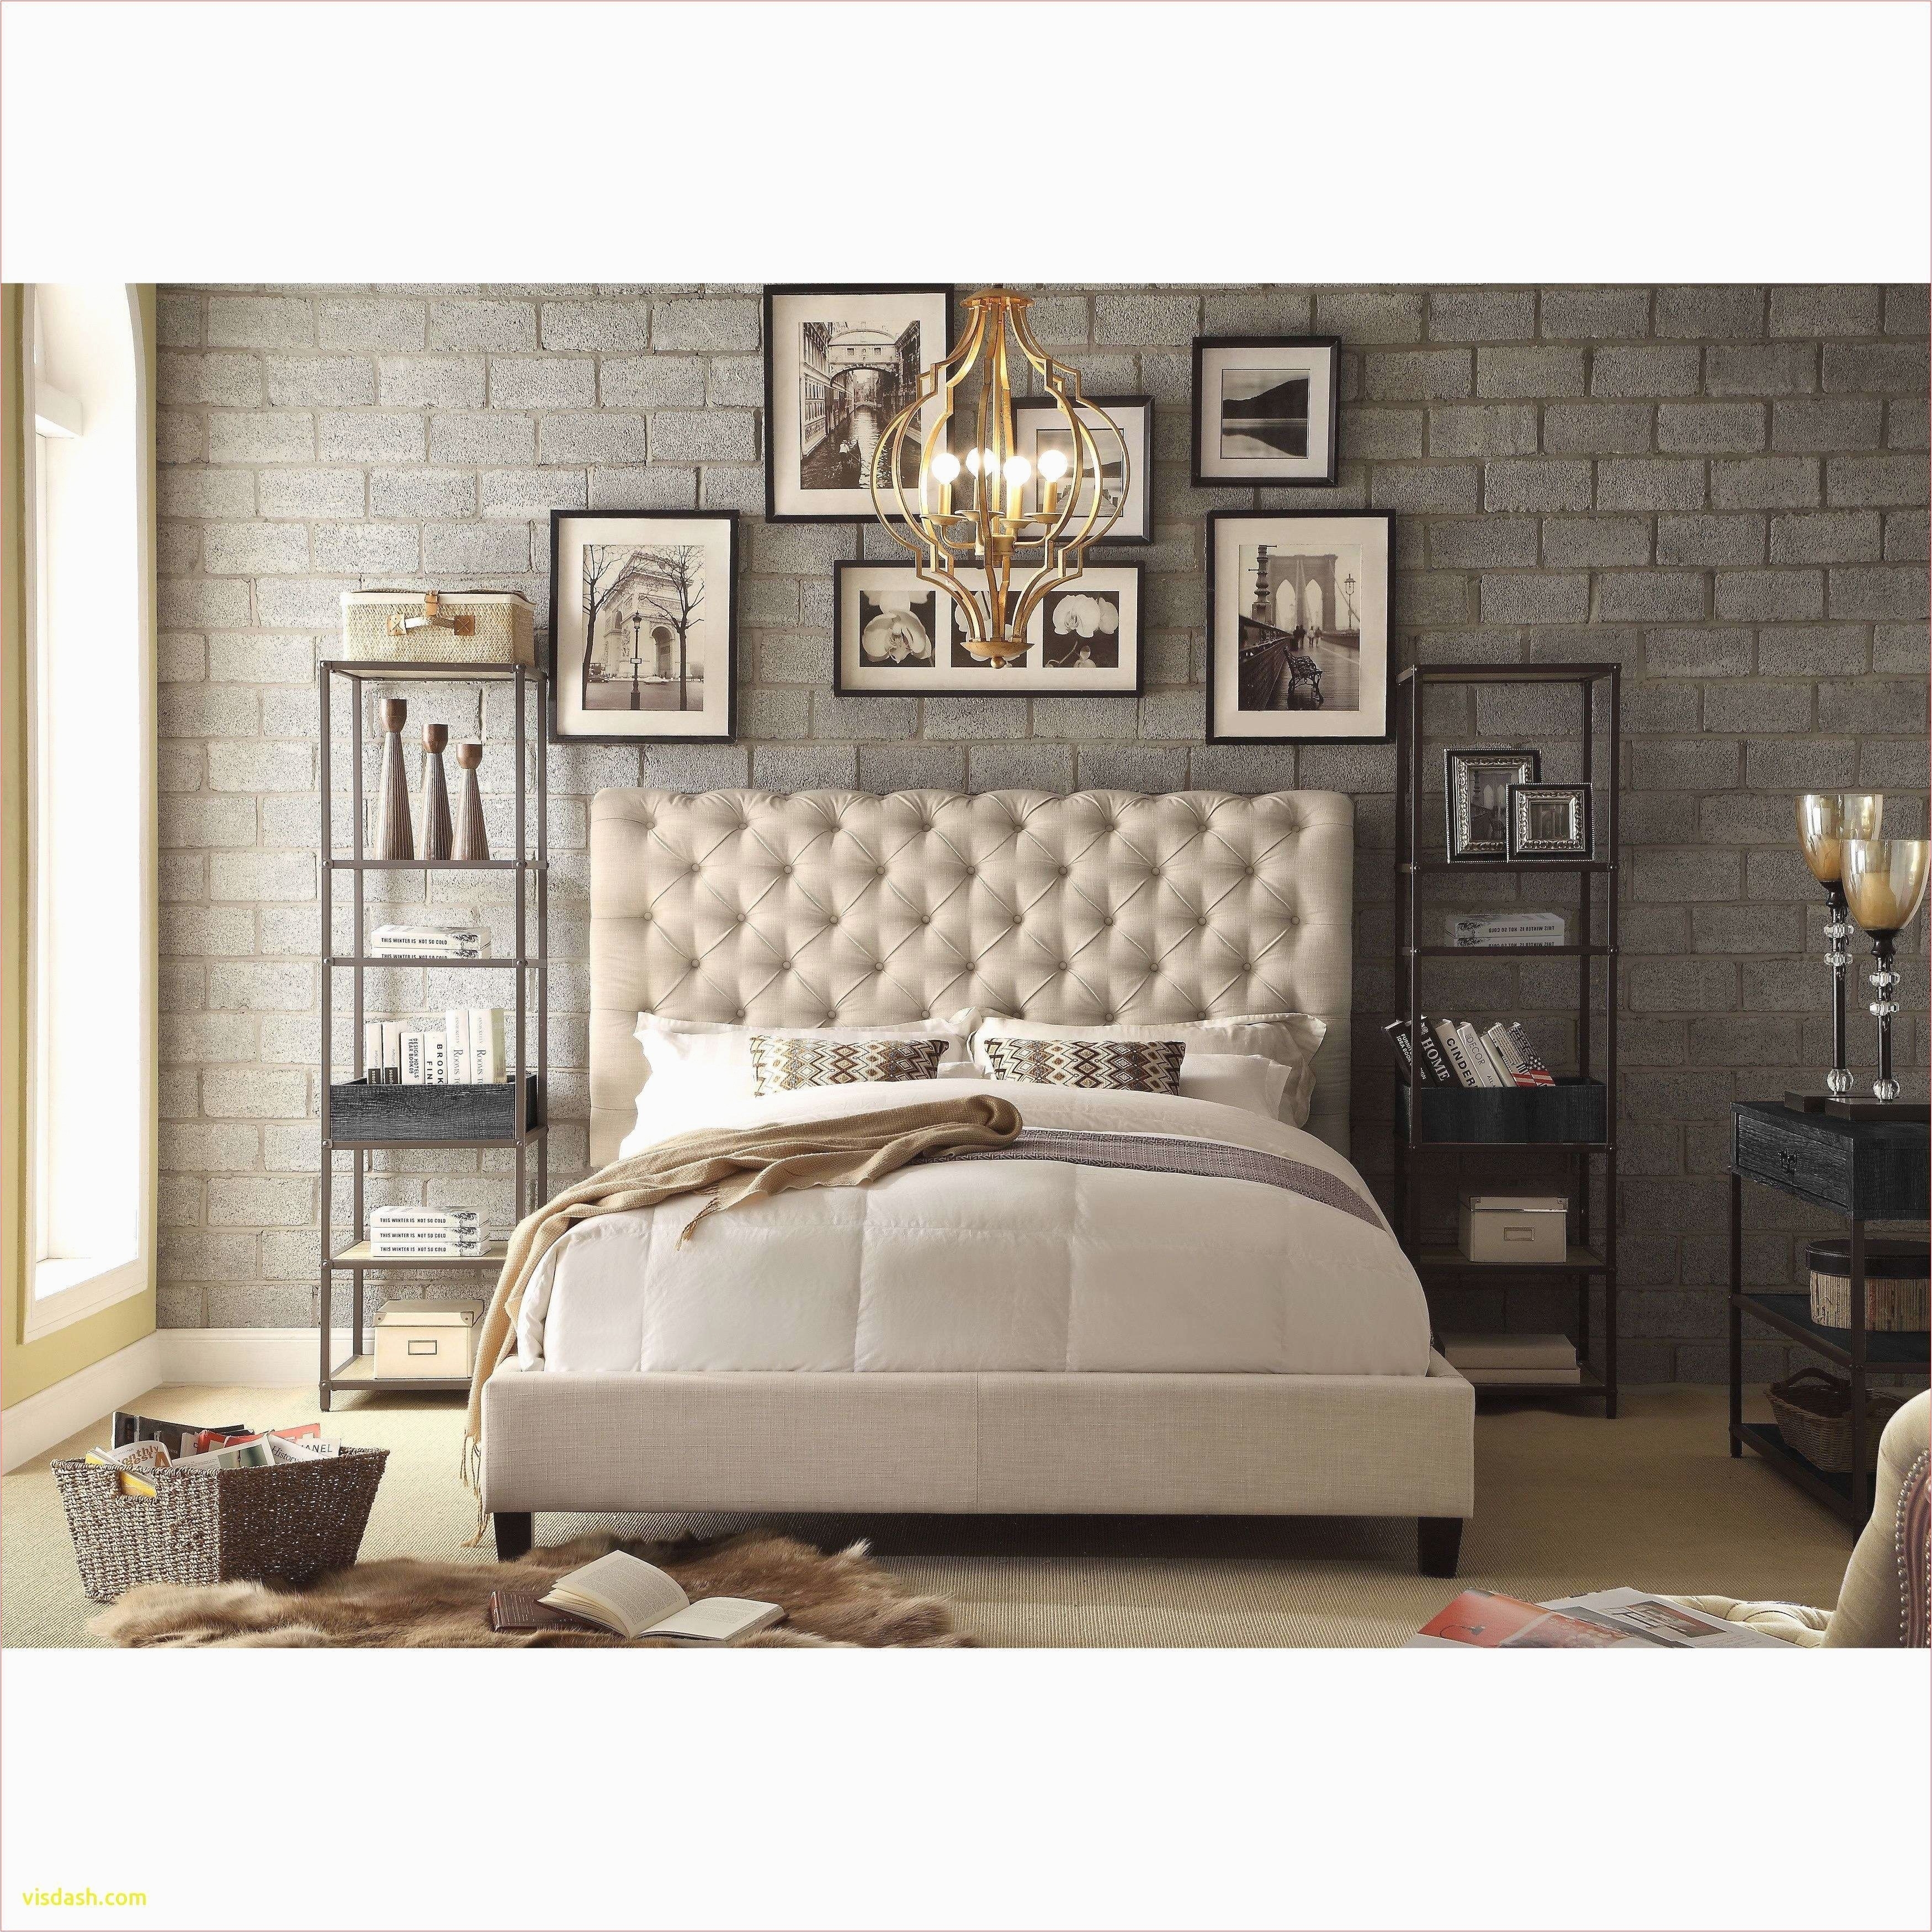 Girls Bedroom Sets Furniture Best s Beautiful Vintage Bedroom Ideas – Home Design &